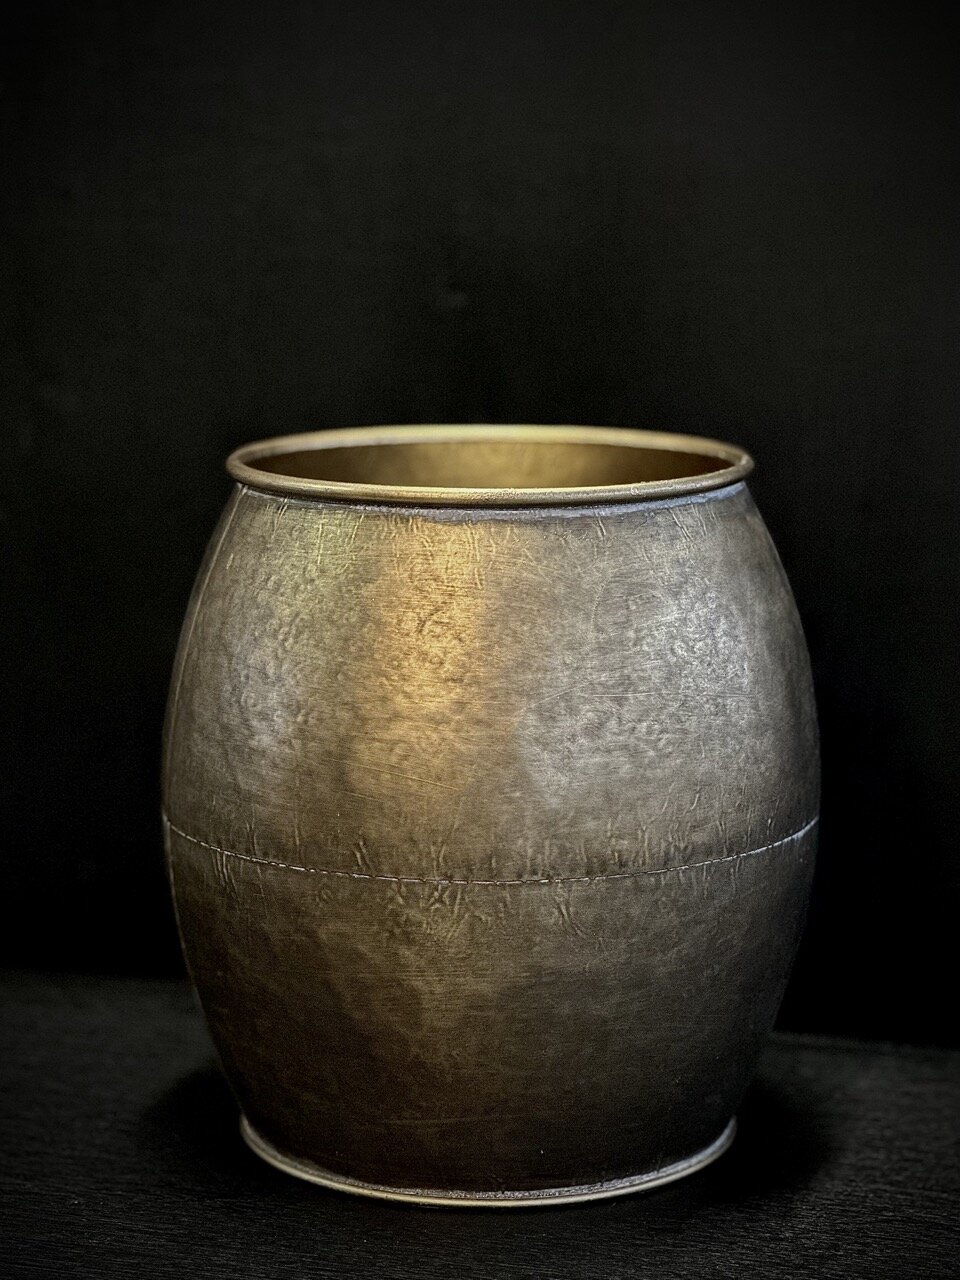 PIERRE pot, antique gold